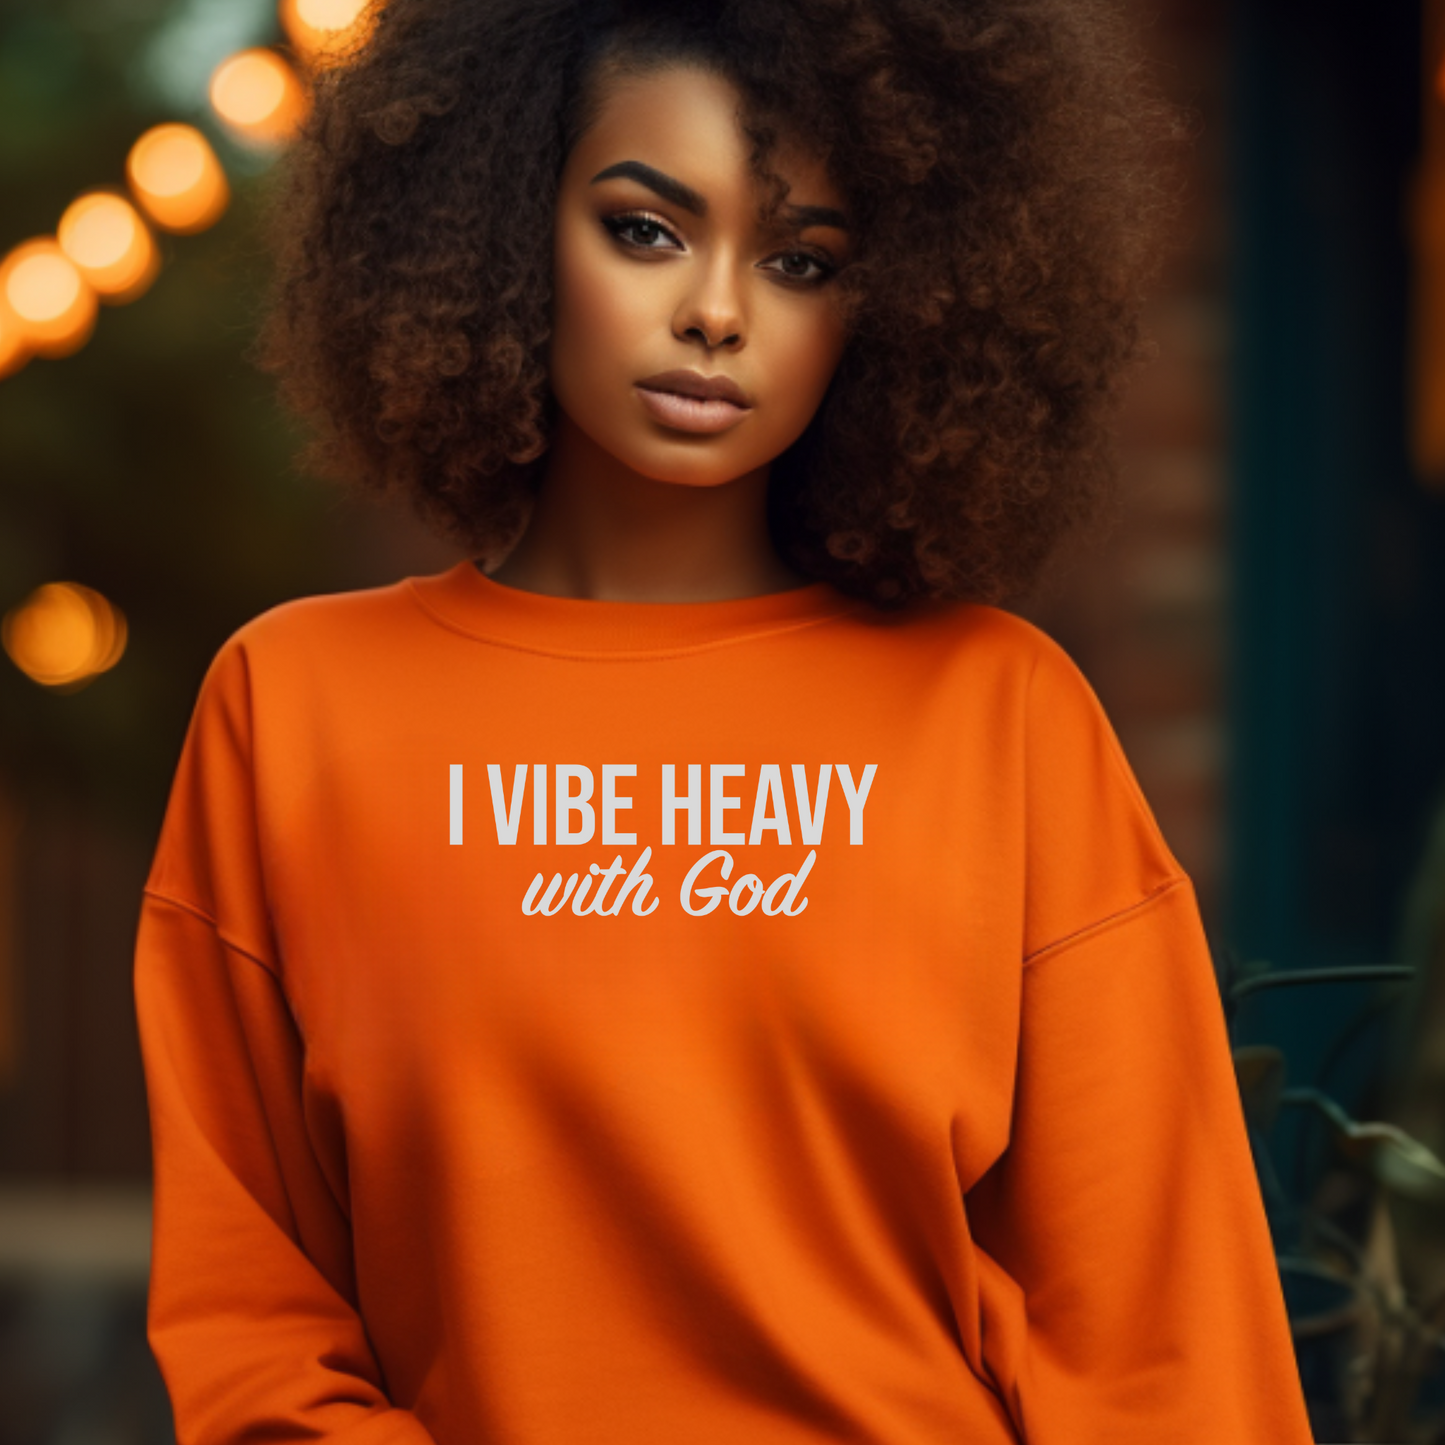 Vibe Heavy with God